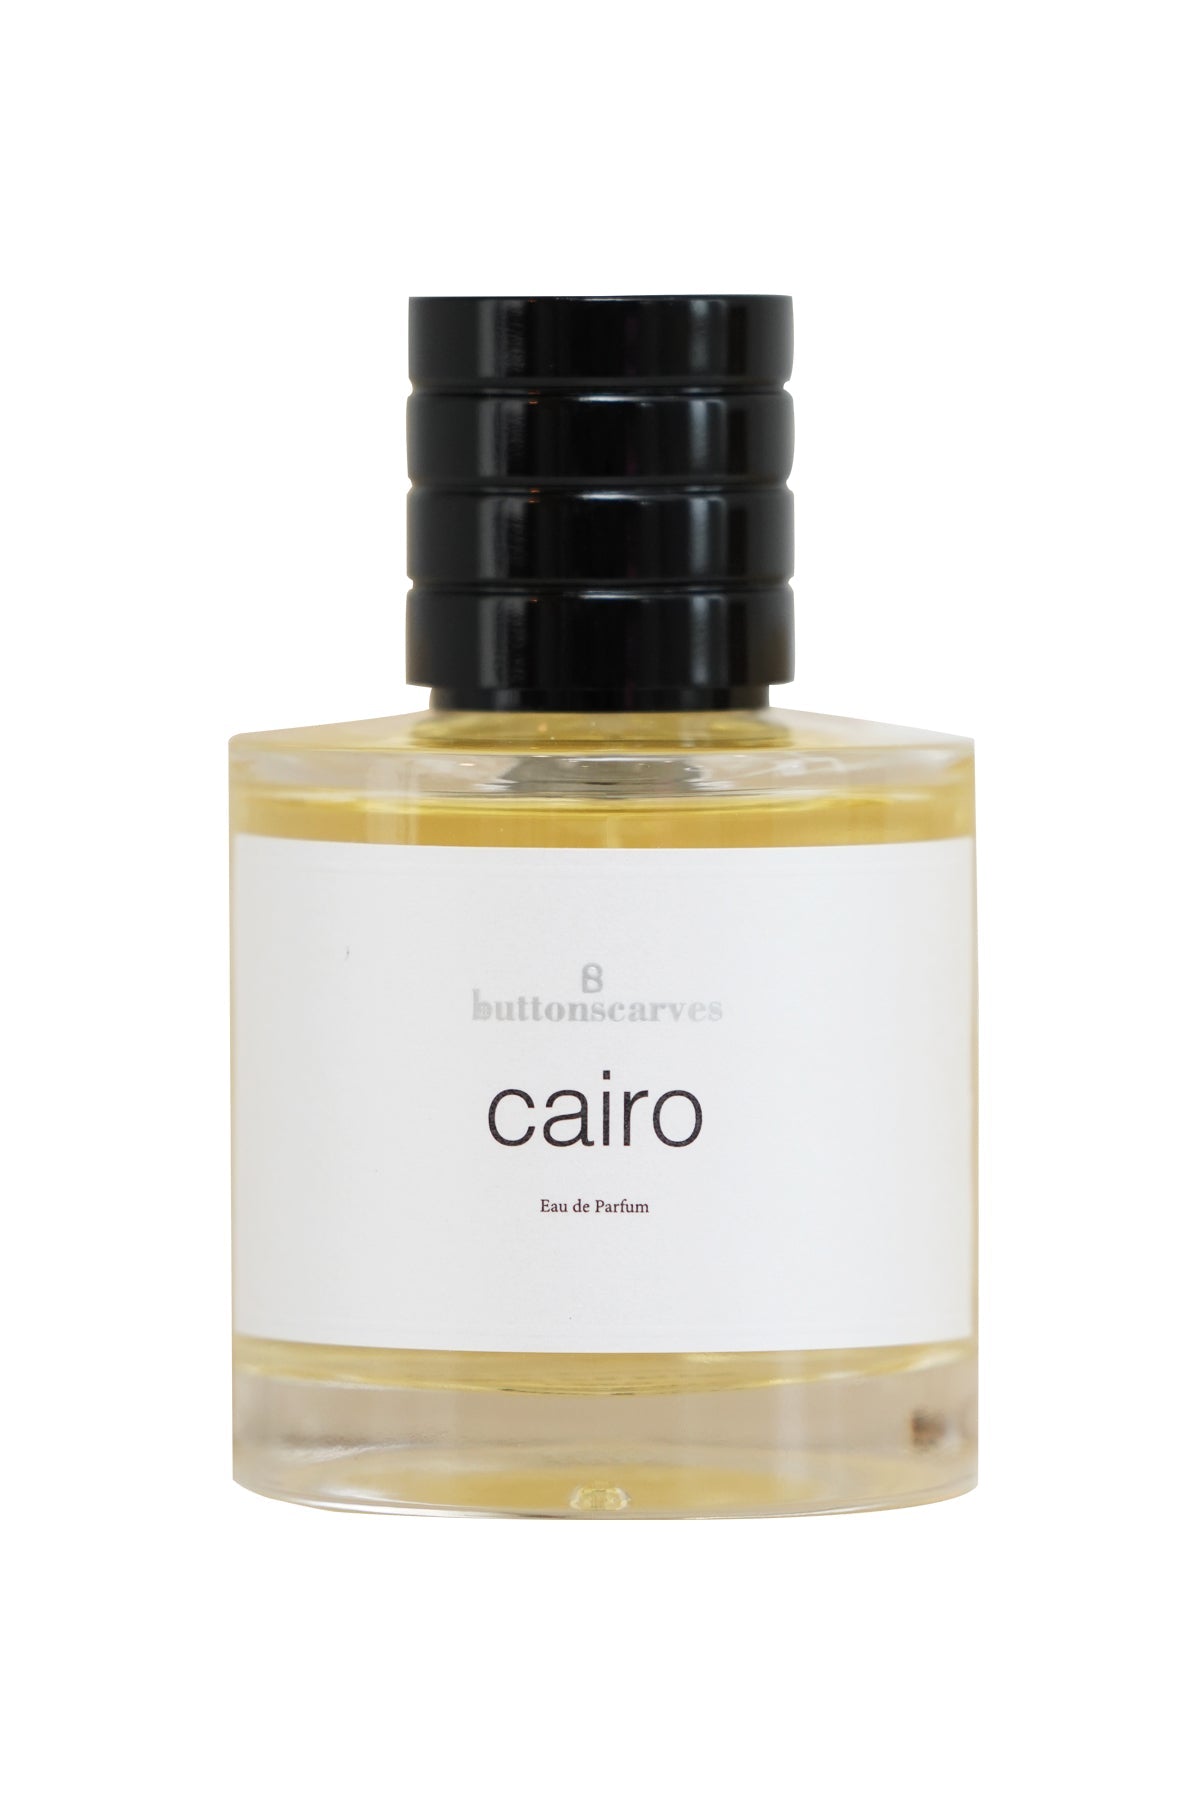 BSB - Cairo Eau De Perfume